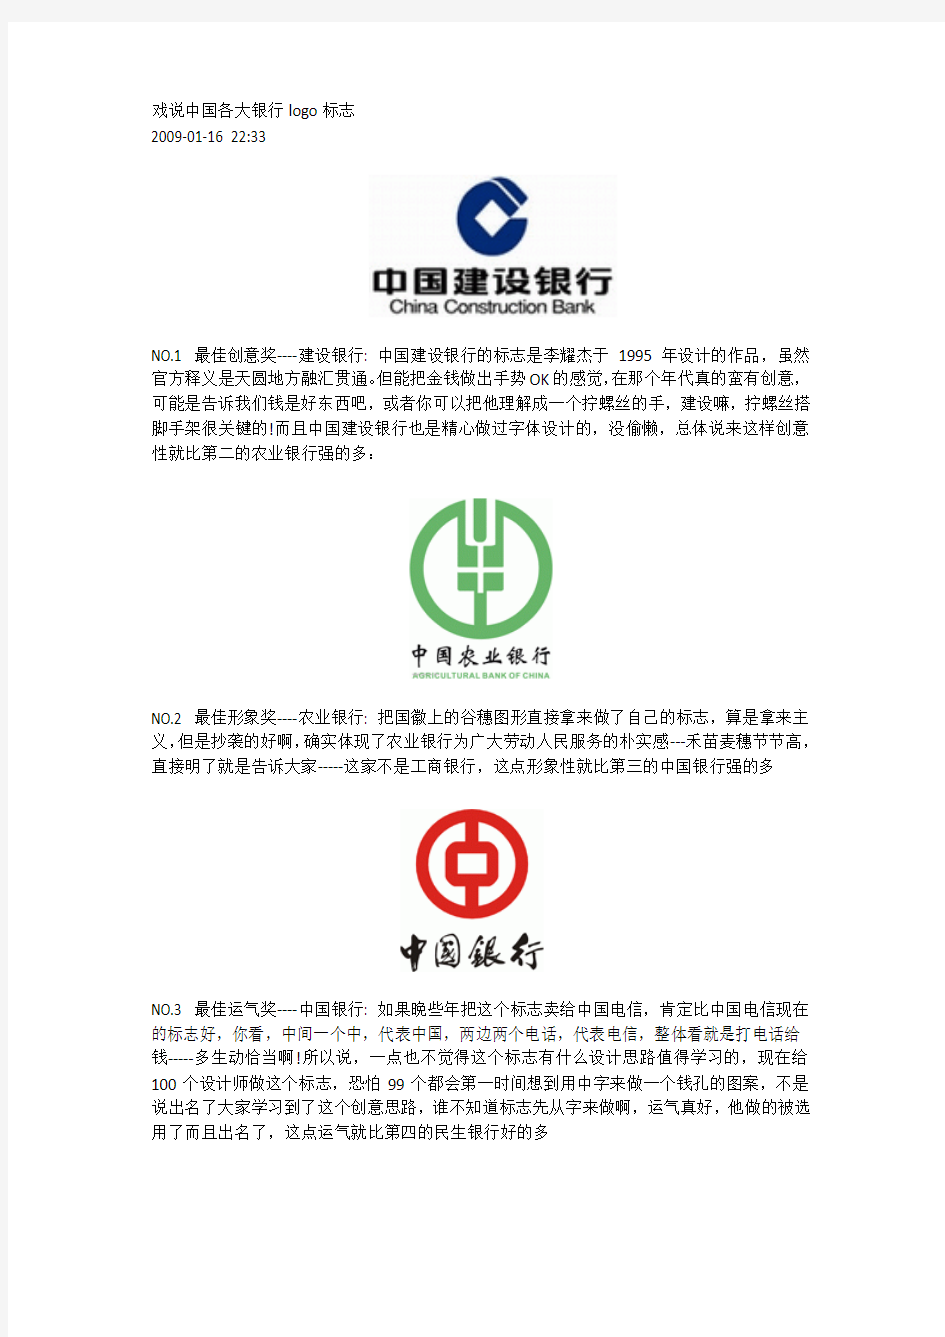 戏说中国各大银行logo标志